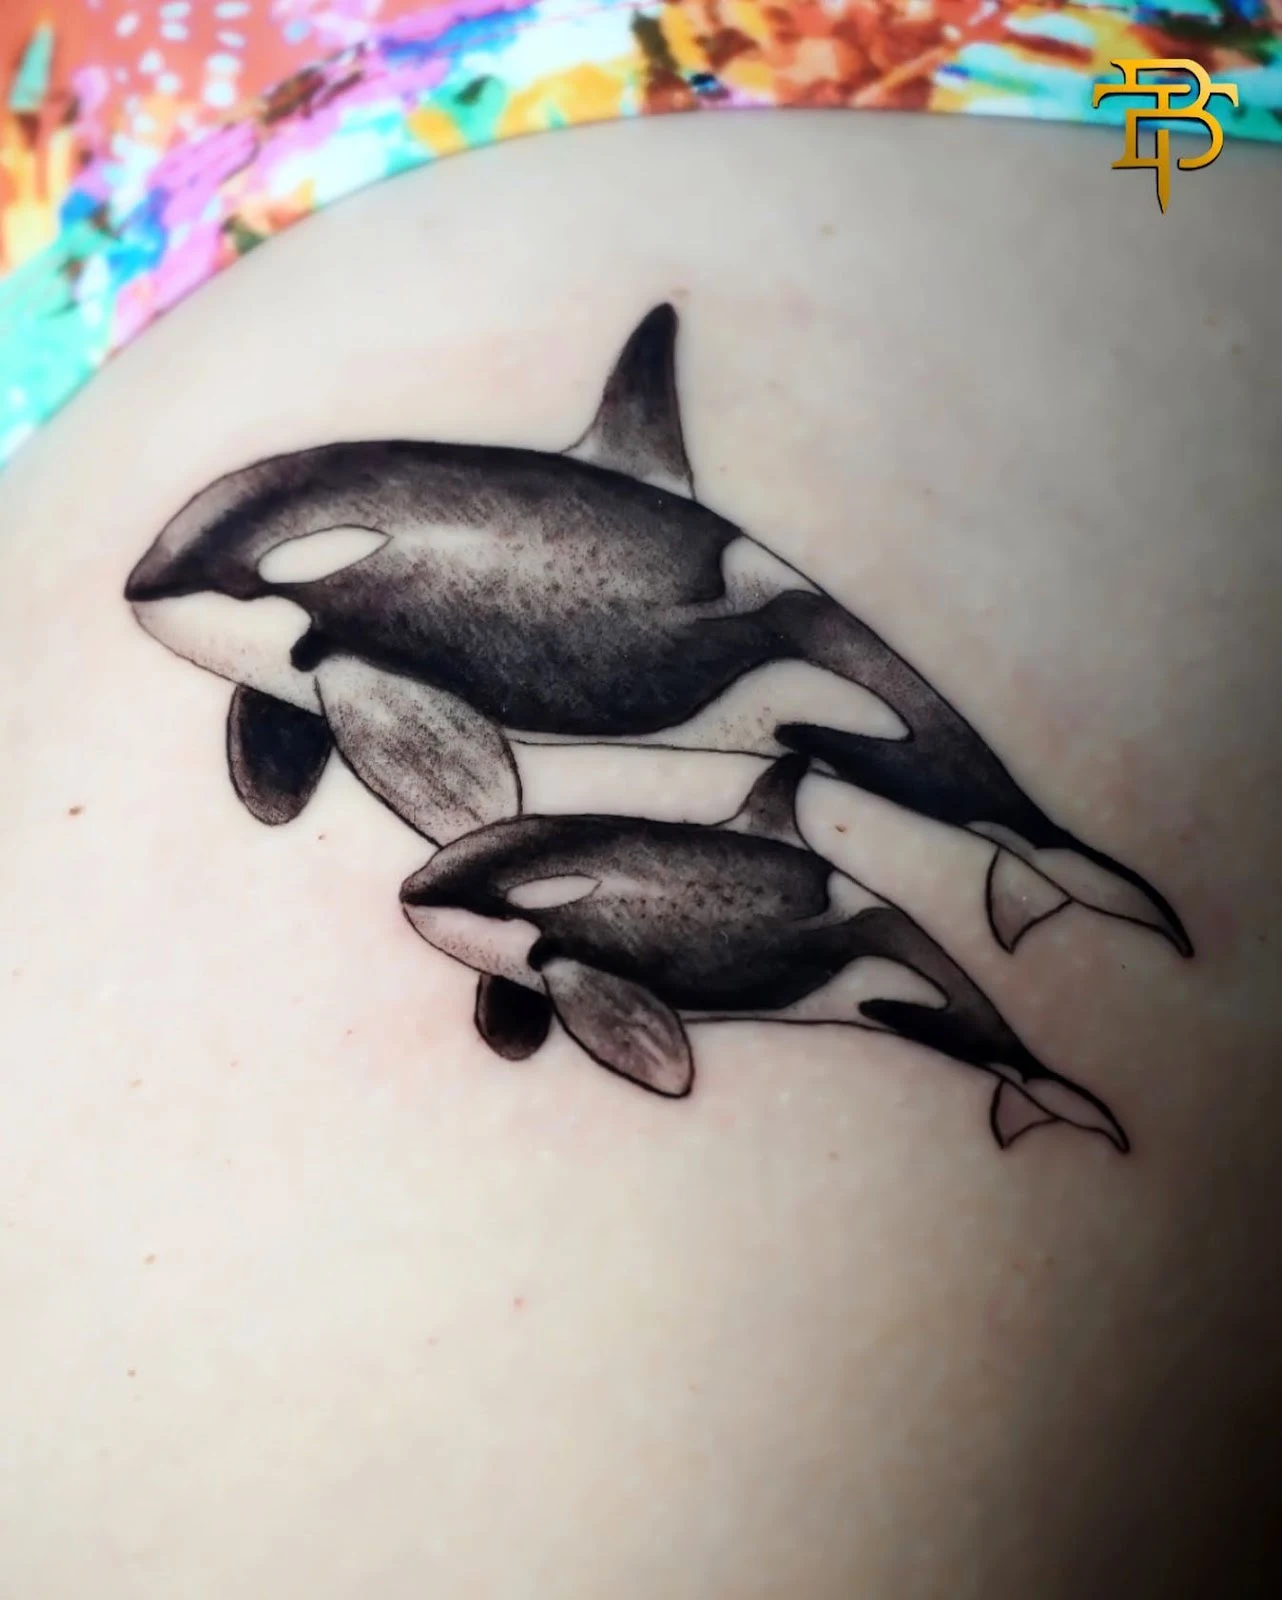 tatuajes hermosos de orcas ideas originales y su maravilloso significado